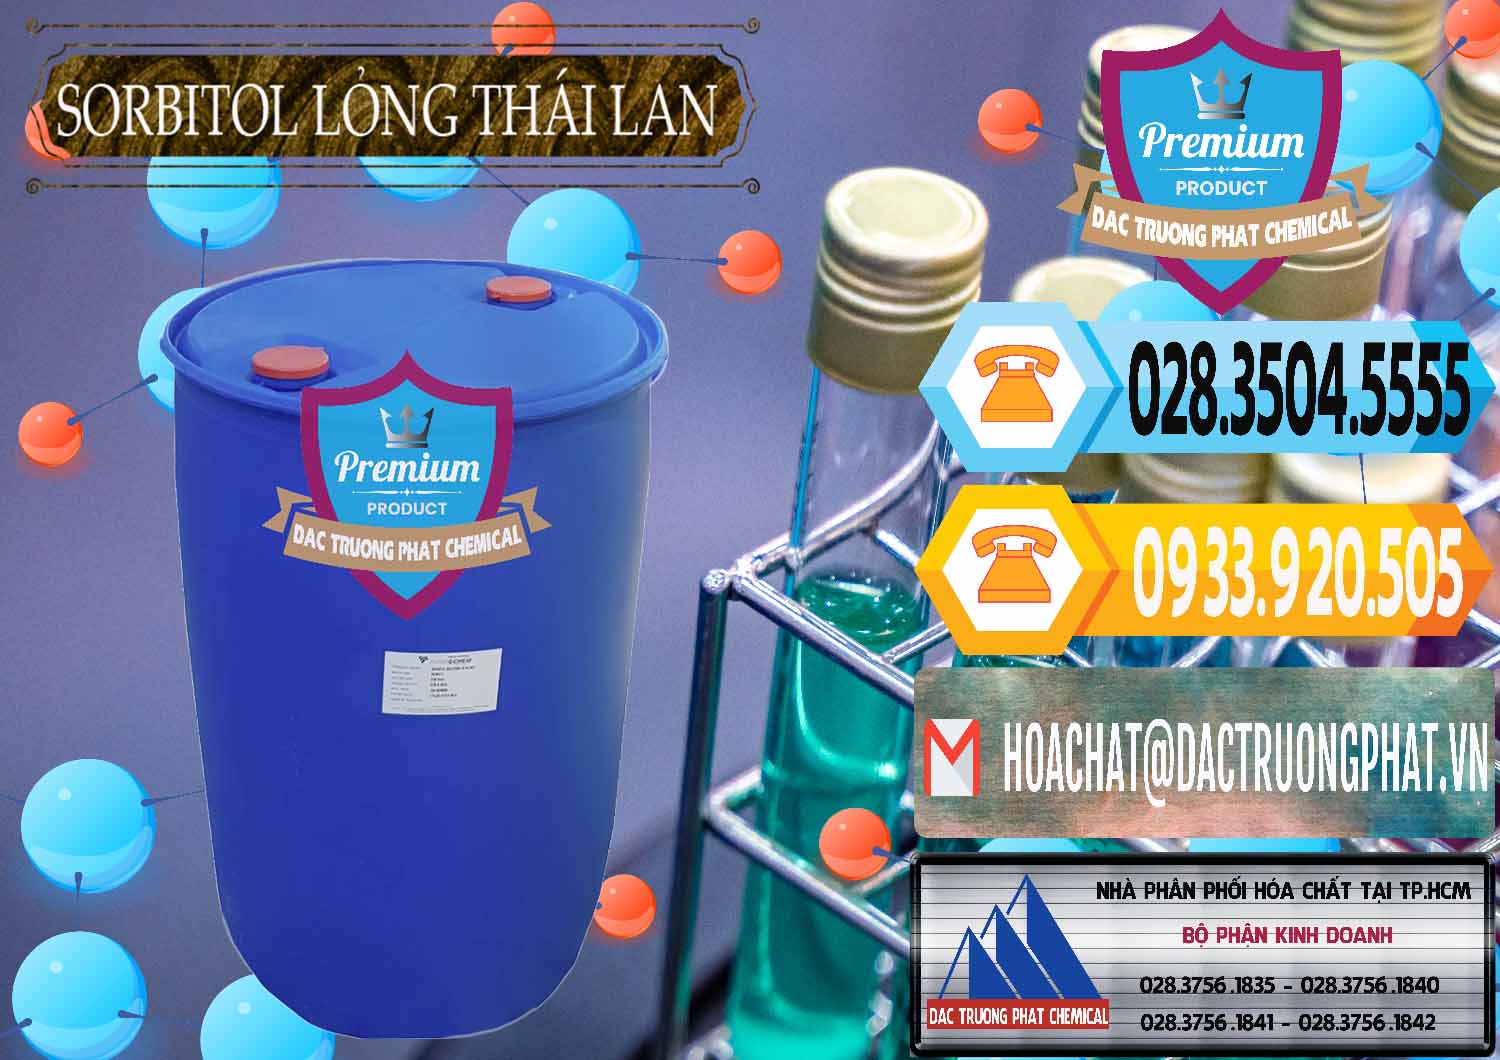 Nơi phân phối và bán Sorbitol - C6H14O6 Lỏng 70% Food Grade Thái Lan Thailand - 0341 - Đơn vị kinh doanh & cung cấp hóa chất tại TP.HCM - hoachattayrua.net